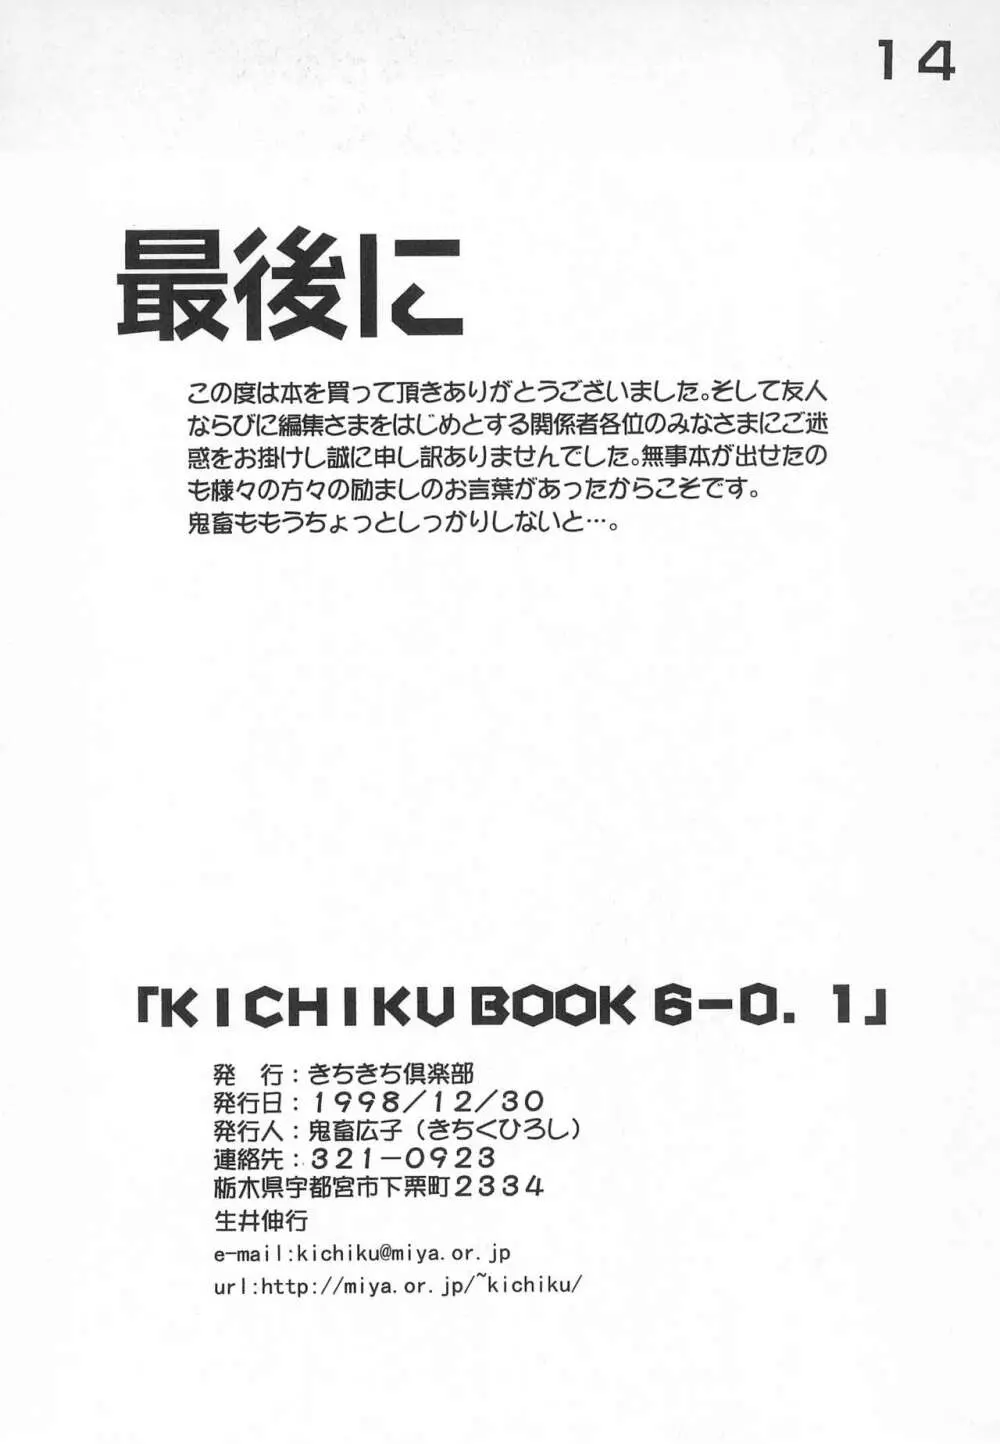 KICHIKU BOOK 6-0.1 14ページ